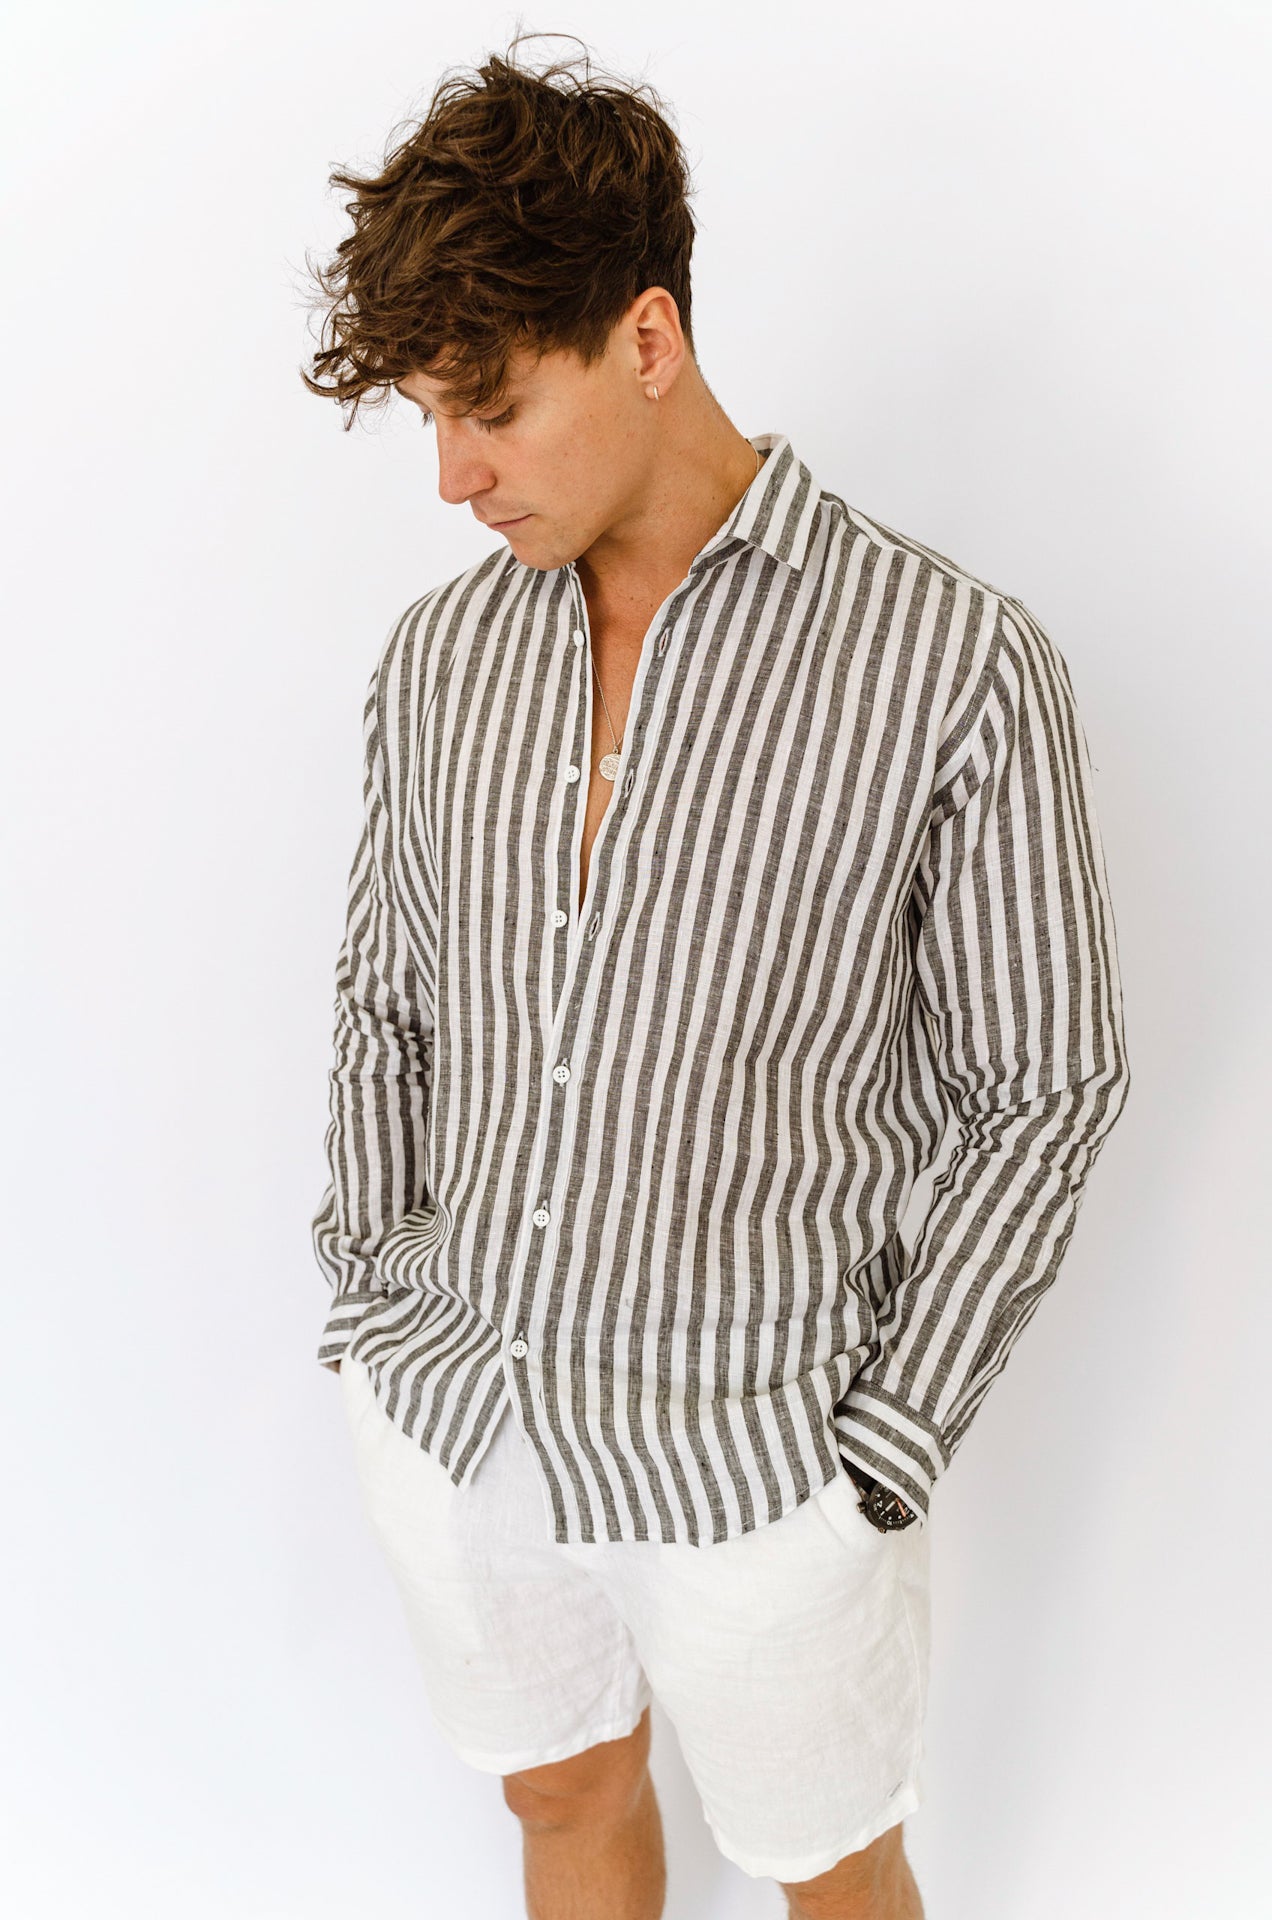 Scorzone Stripes - Long Sleeve Italian Linen Shirt - Mr. Linen Co Mr. Linen CO